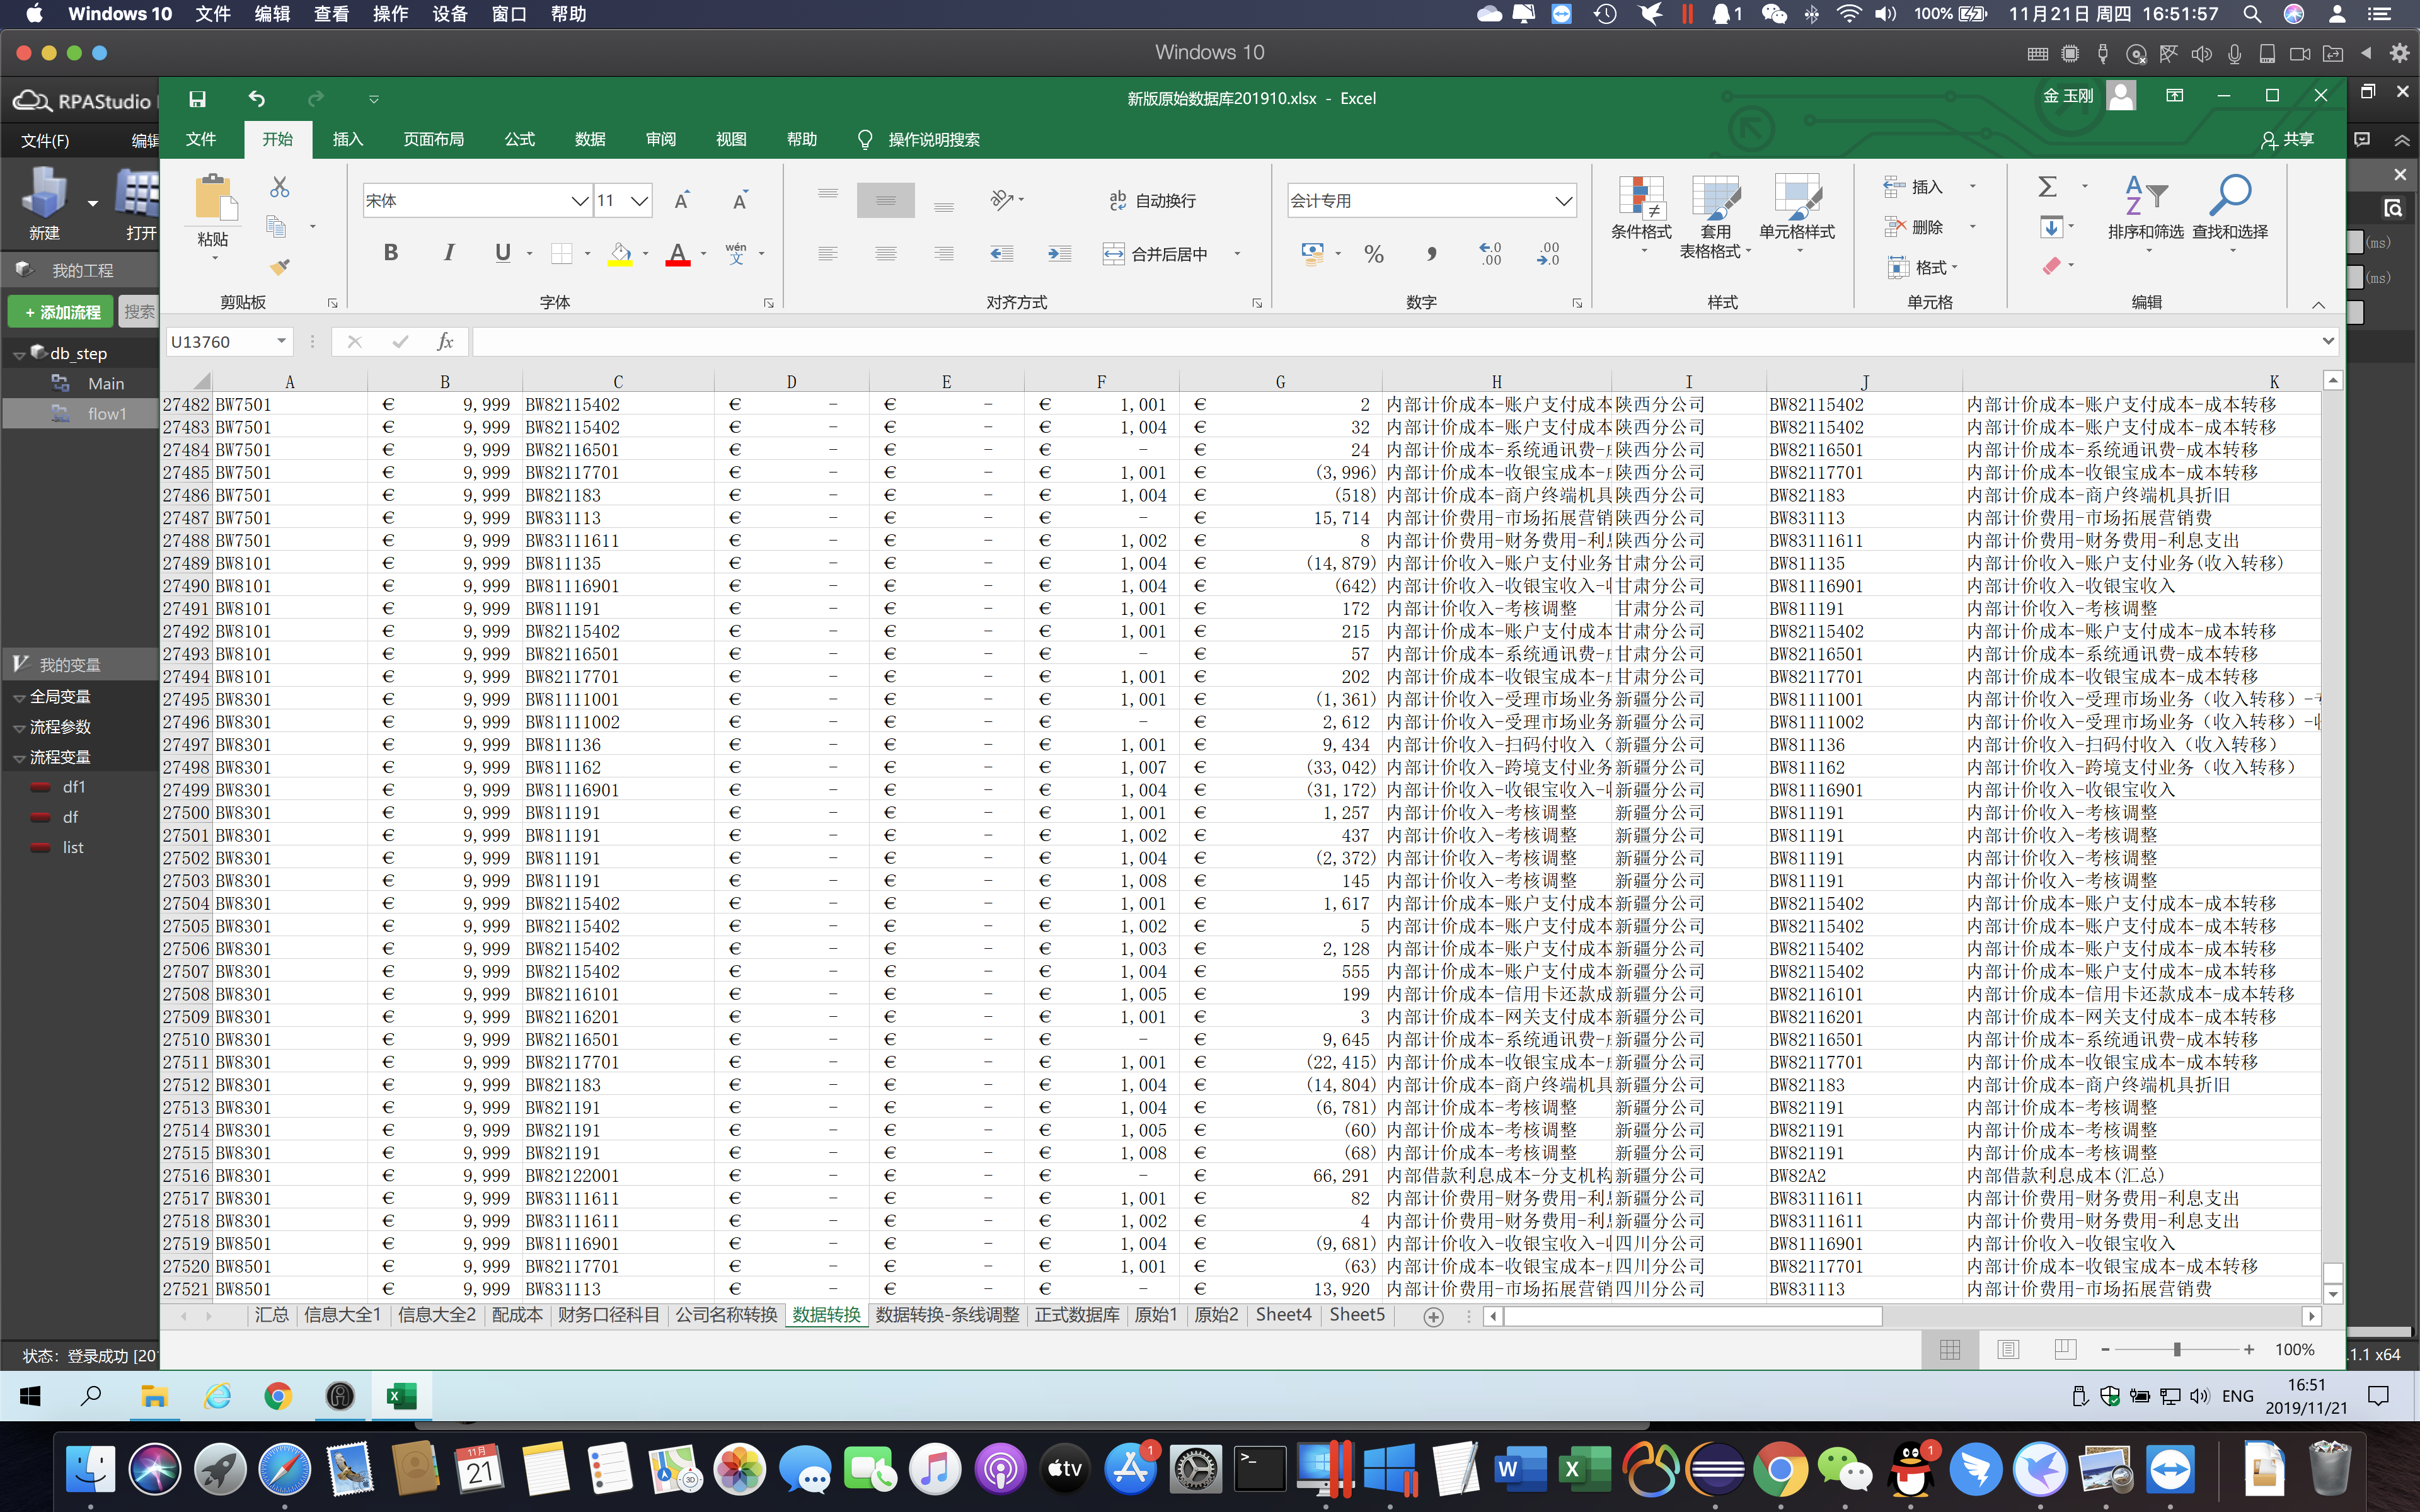 用读取 Excel 组件读取的表格数据量很大 有几万行 读取等待时间太长 这个可以优化吗？如何优化？